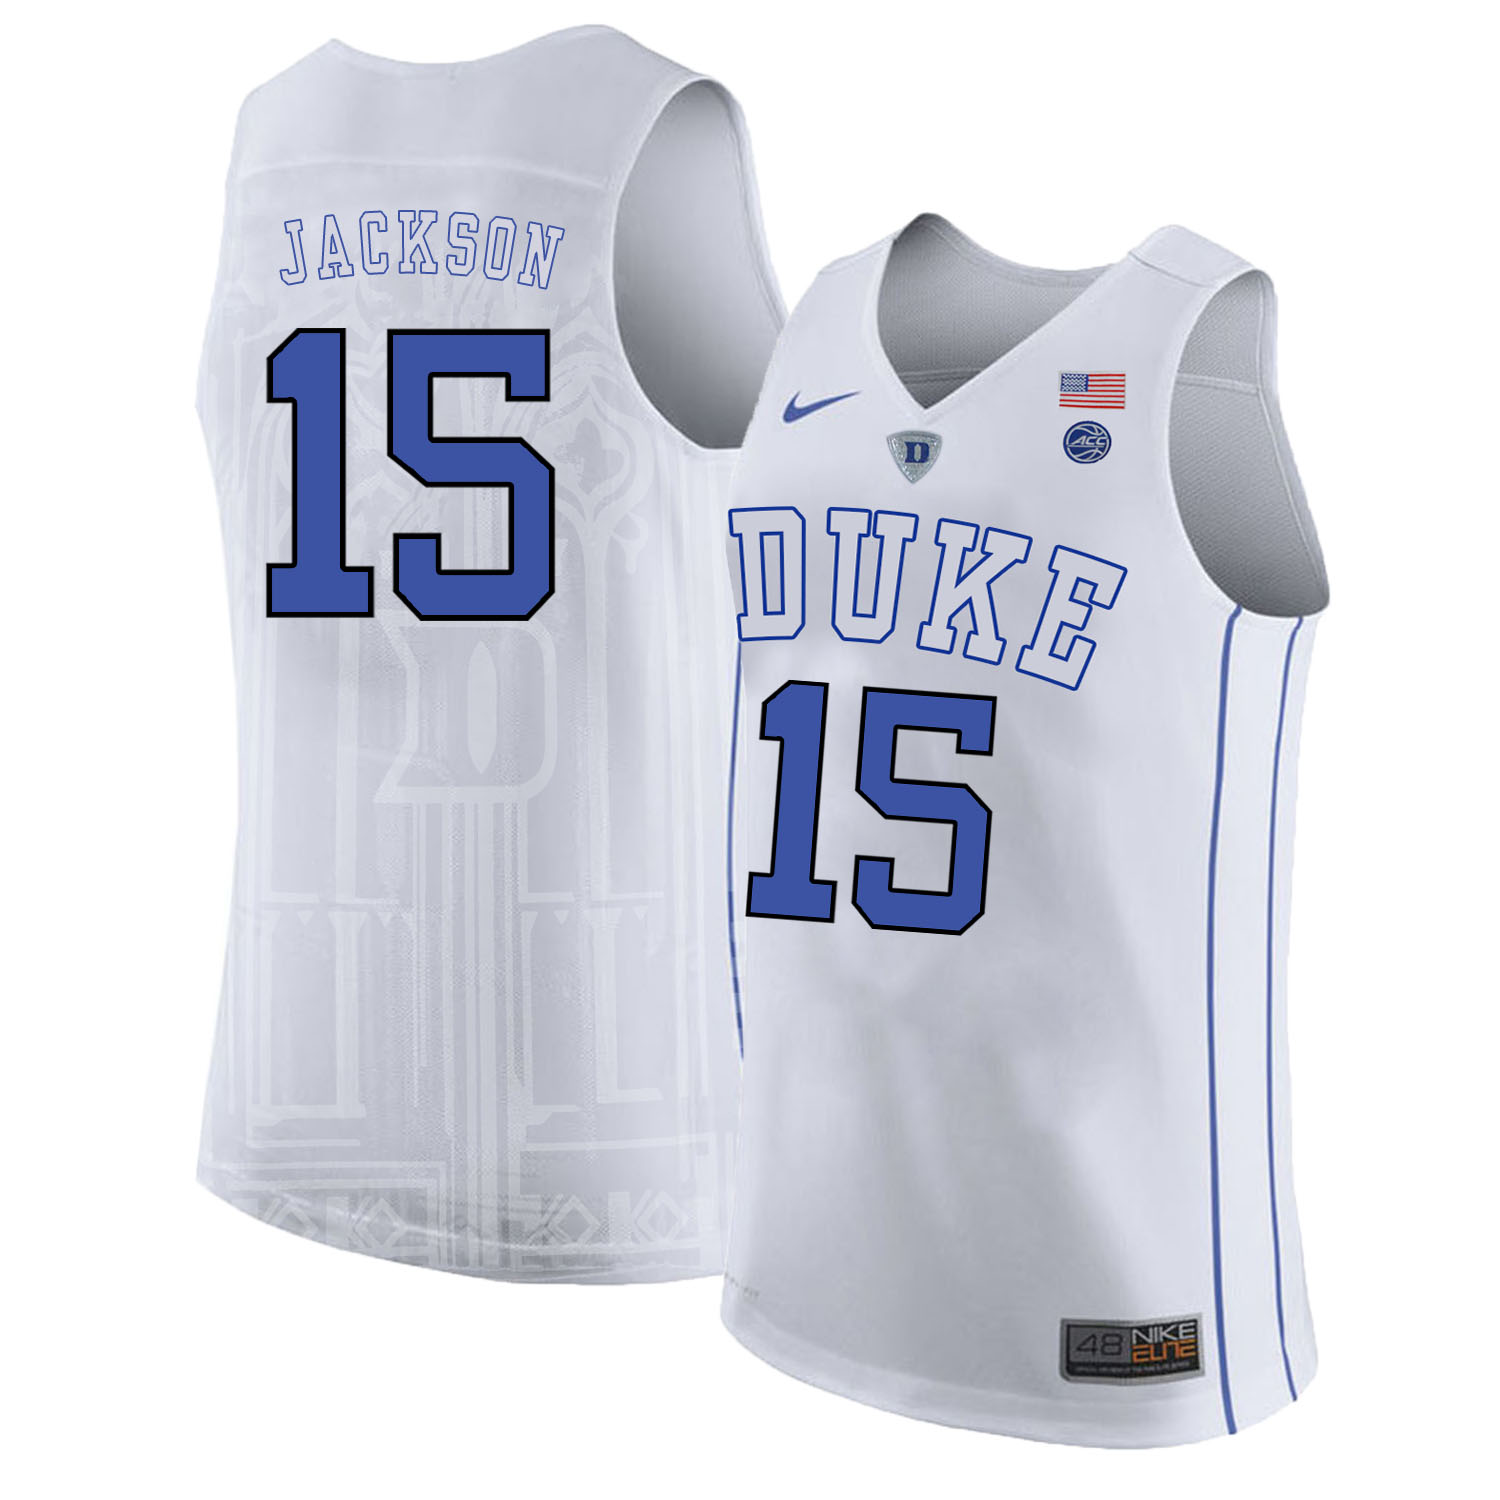 Duke Blue Devils 15 Frank Jackson White Nike College Basketball Jersey